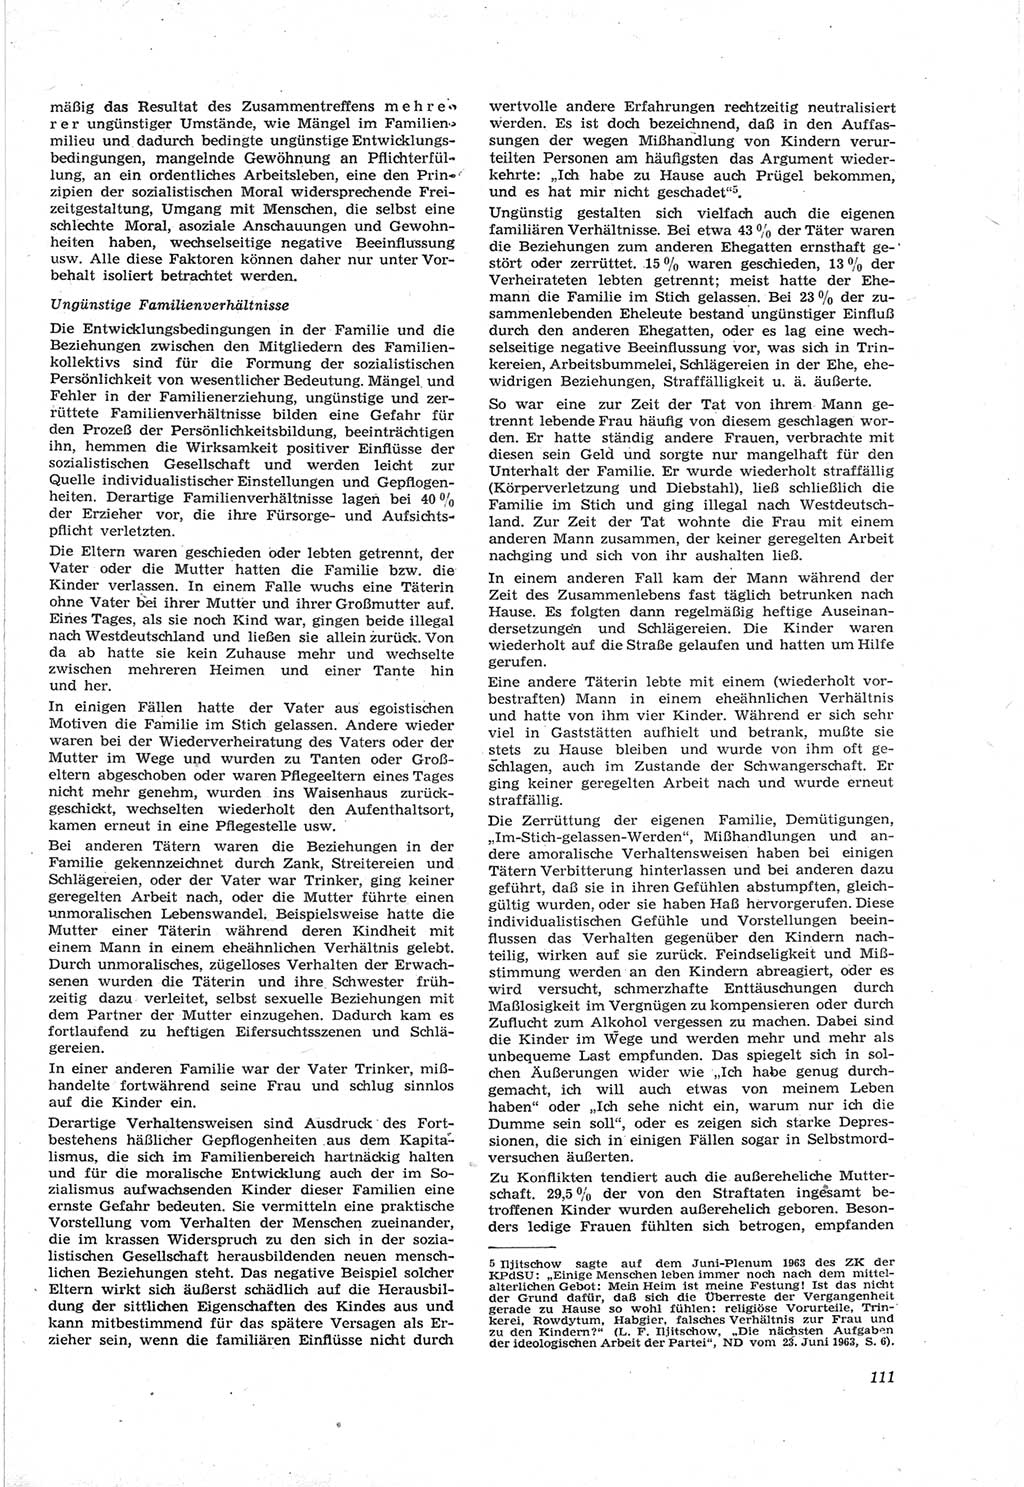 Neue Justiz (NJ), Zeitschrift für Recht und Rechtswissenschaft [Deutsche Demokratische Republik (DDR)], 18. Jahrgang 1964, Seite 111 (NJ DDR 1964, S. 111)